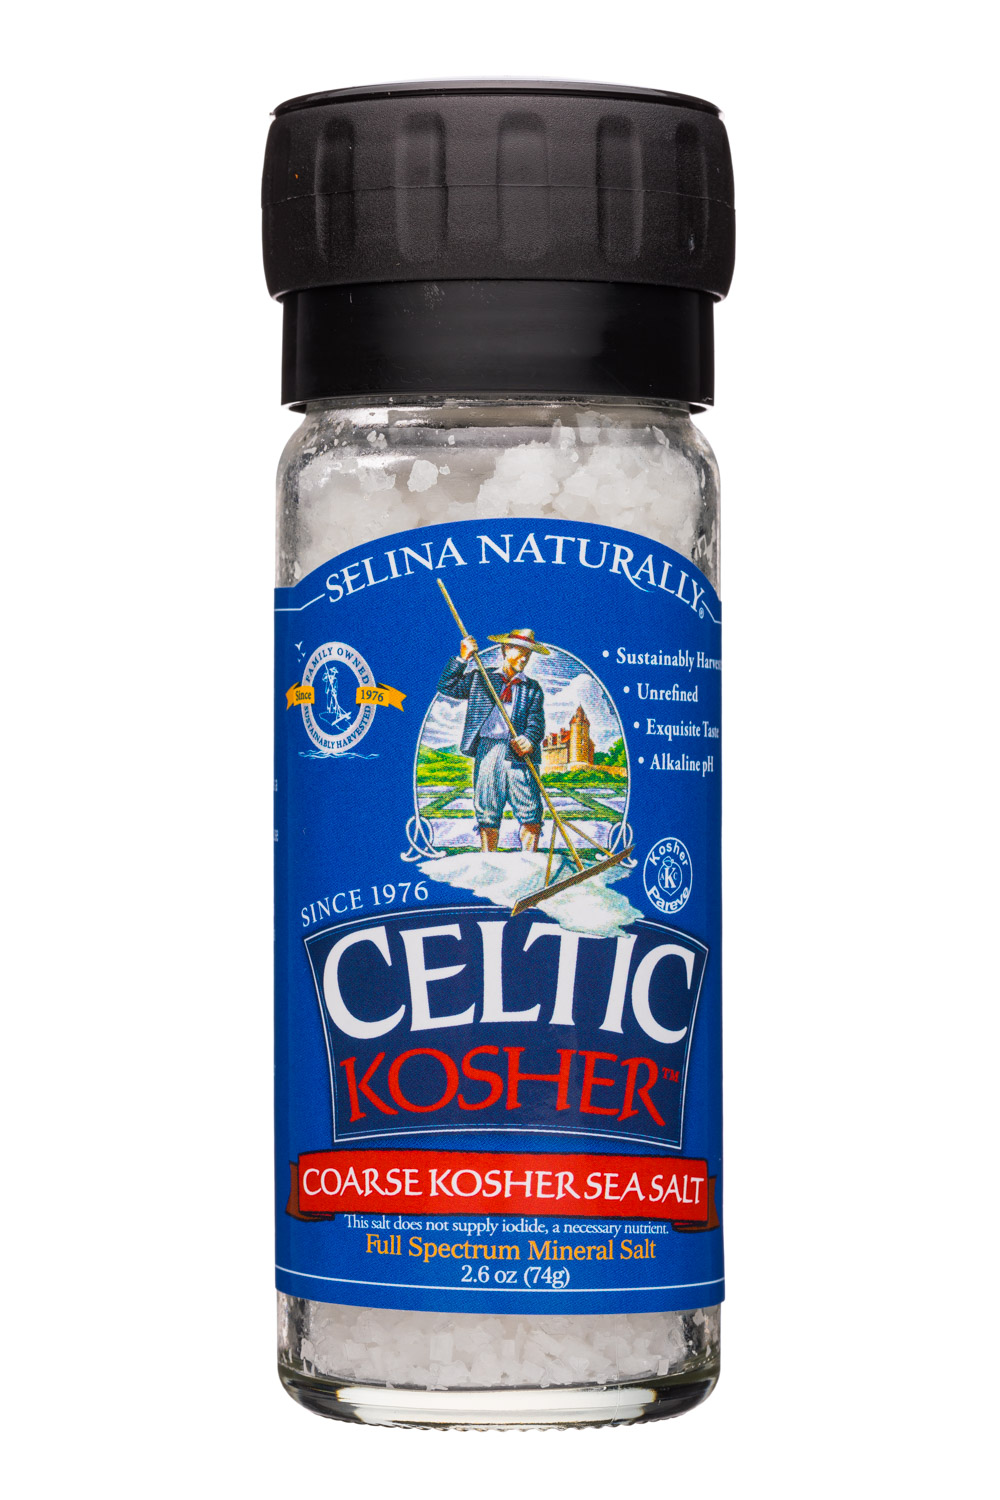 Coarse Kosher Sea Salt - 2.6oz